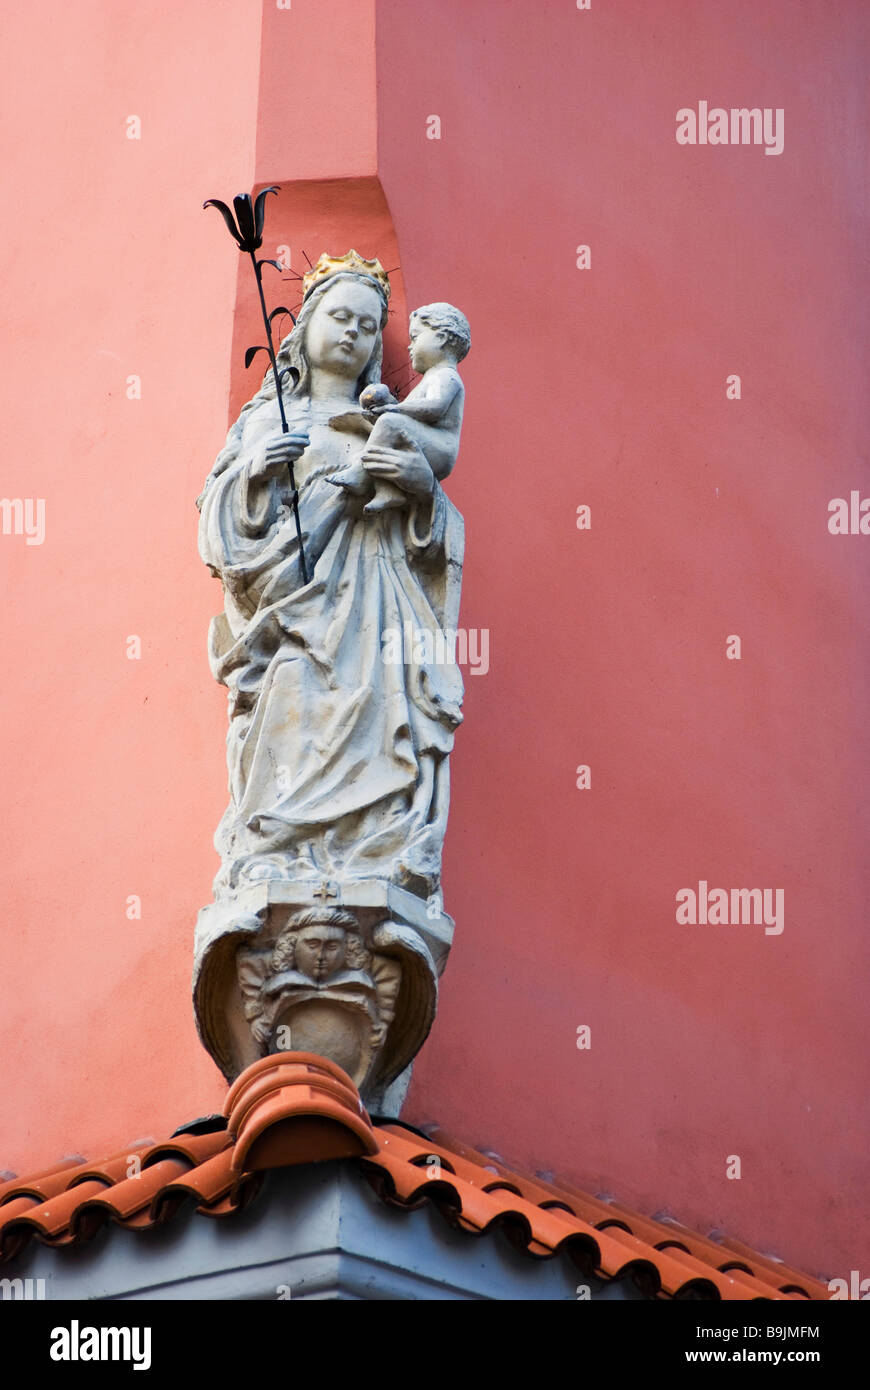 Una statua della Santa Maria e Gesù bambino sul tetto di un edificio nei pressi della Piazza del Mercato Vecchio (Stary Rynek), Poznan, Polonia Foto Stock